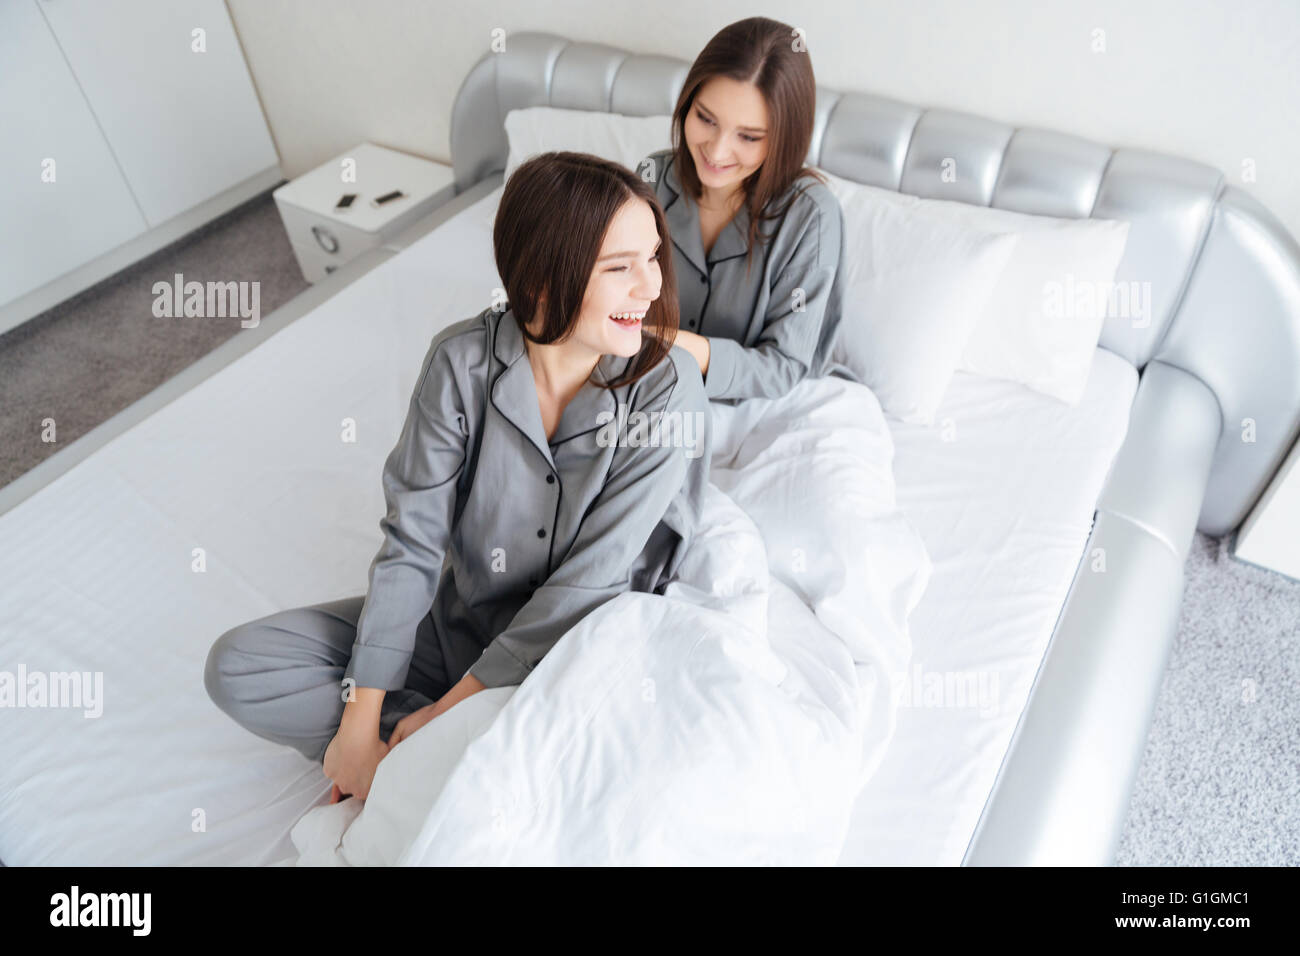 Zwei glückliche schöne junge Schwestern Zwillinge am Bett sitzen und lachen  Stockfotografie - Alamy